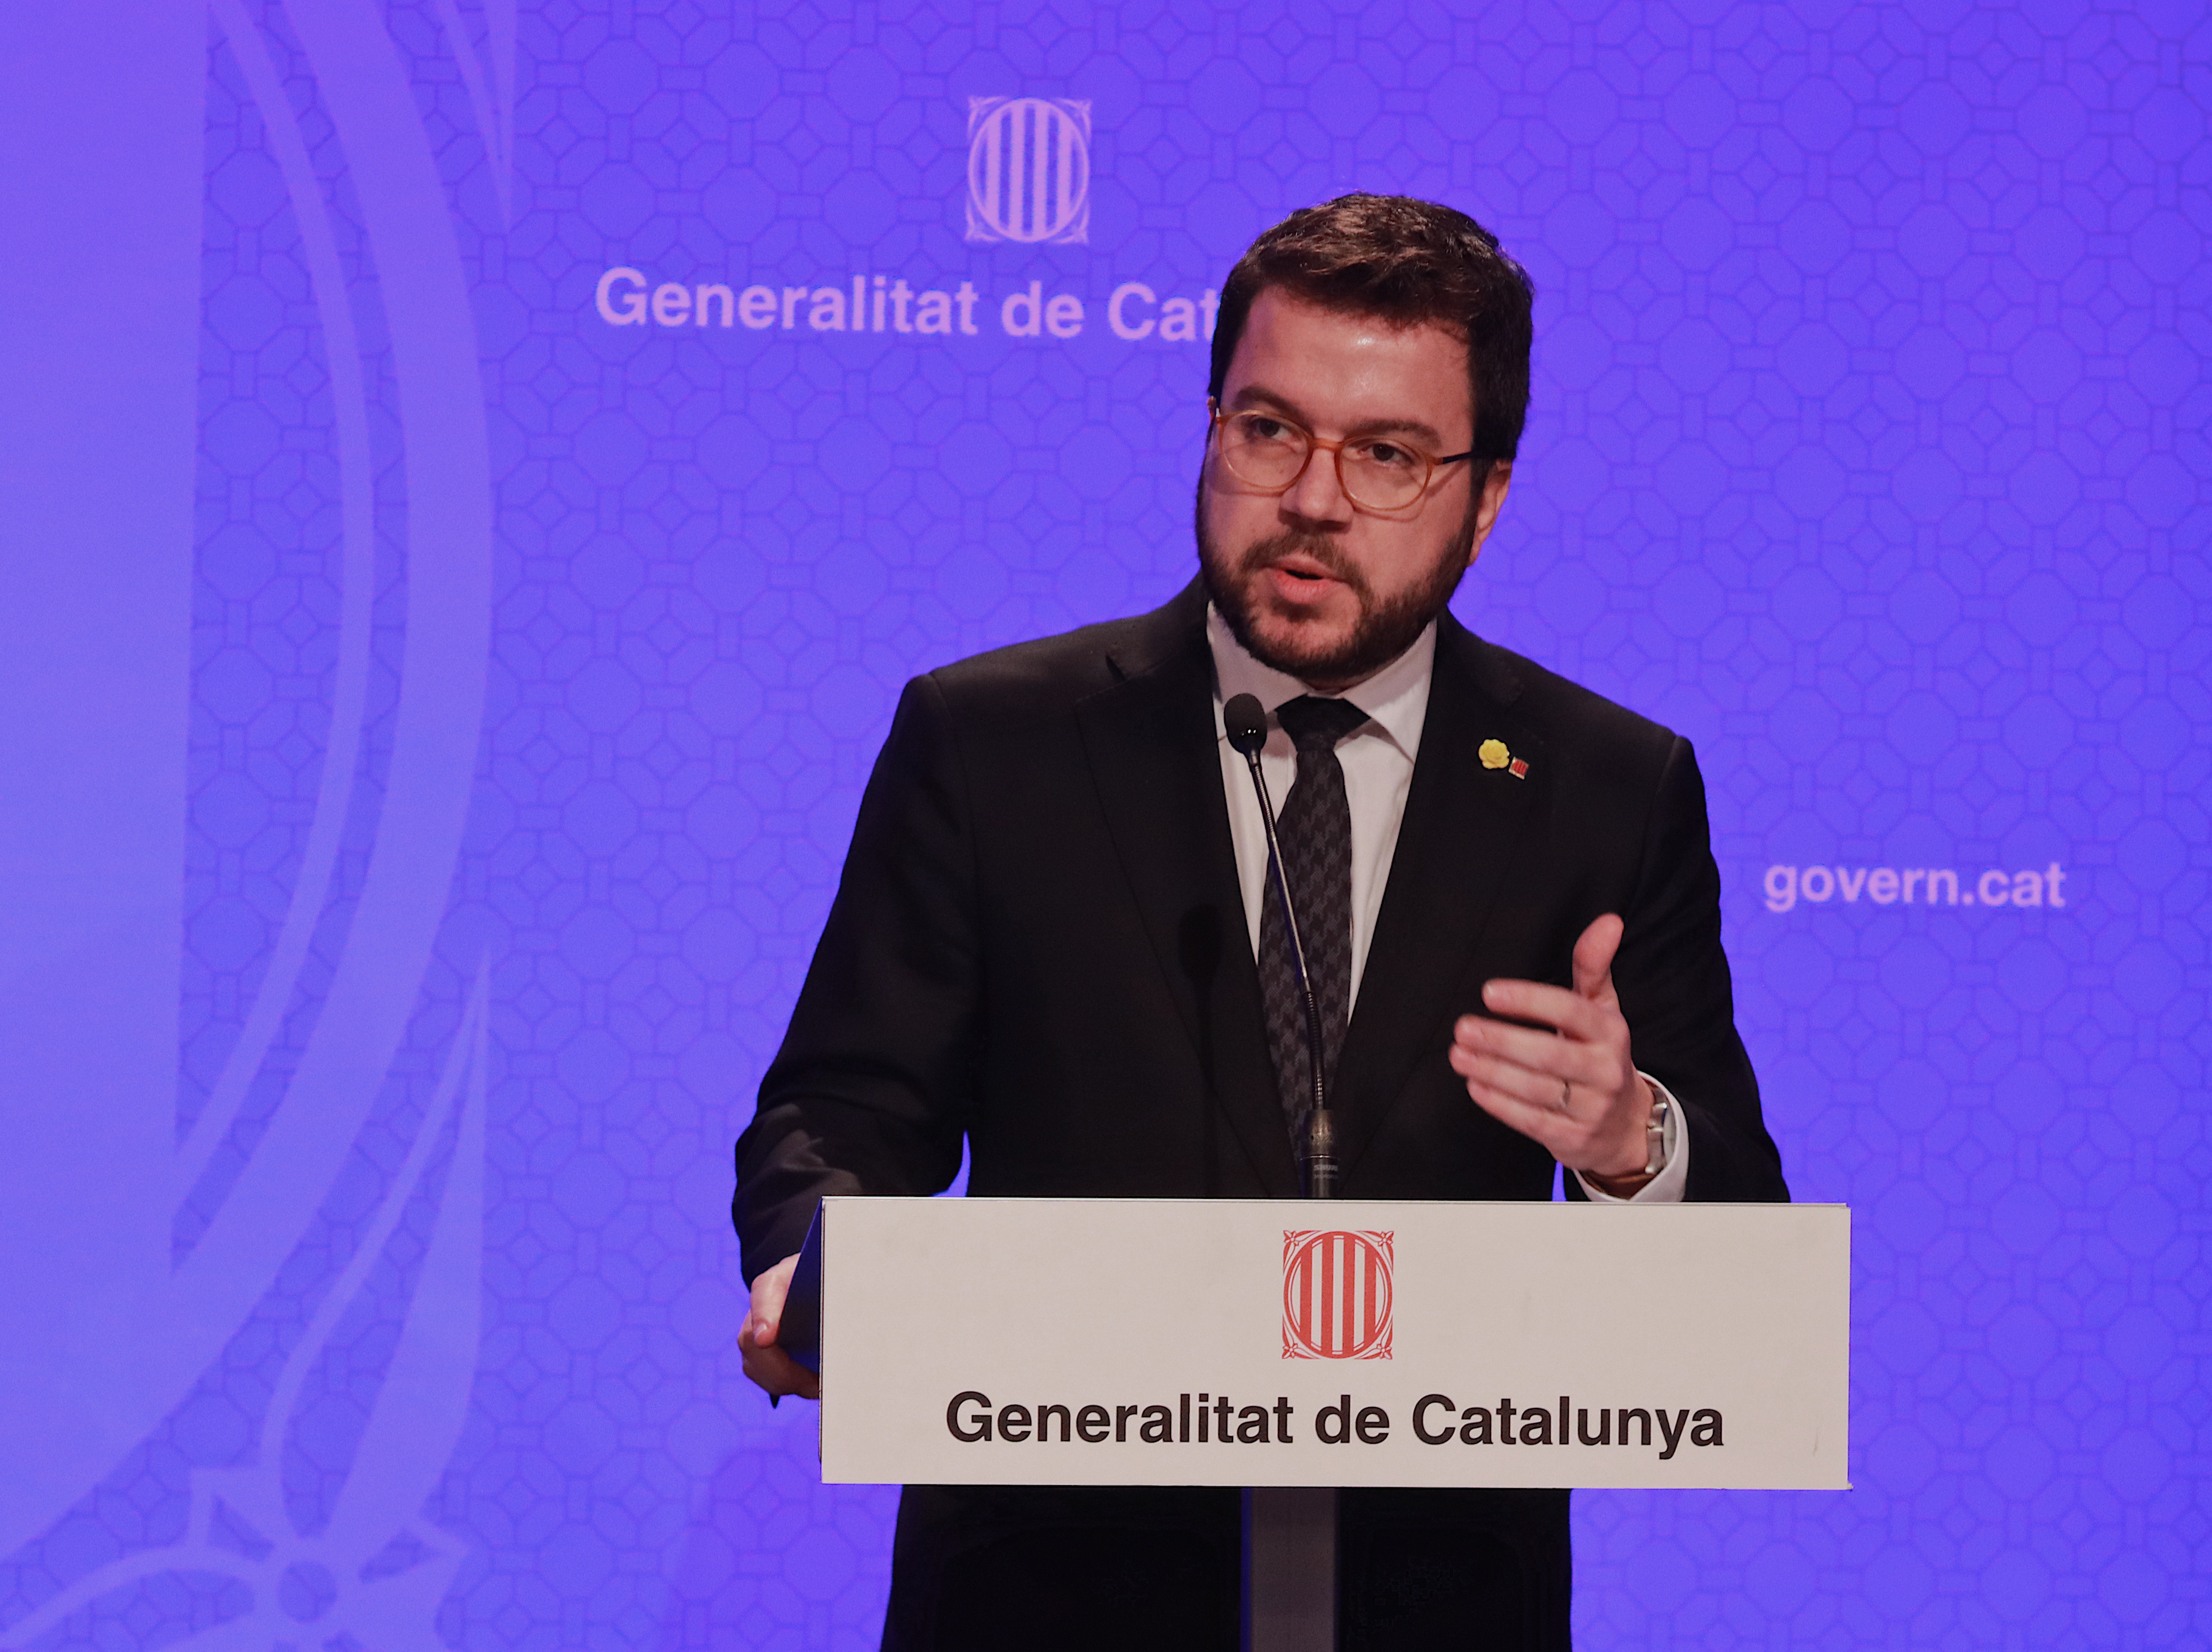 El vicepresident Aragonès, en la roda de premsa per anunciar la mobilització de 1.000 M€ per dotar de liquiditat les empreses afectades pel coronavirus i mantenir els llocs de treball